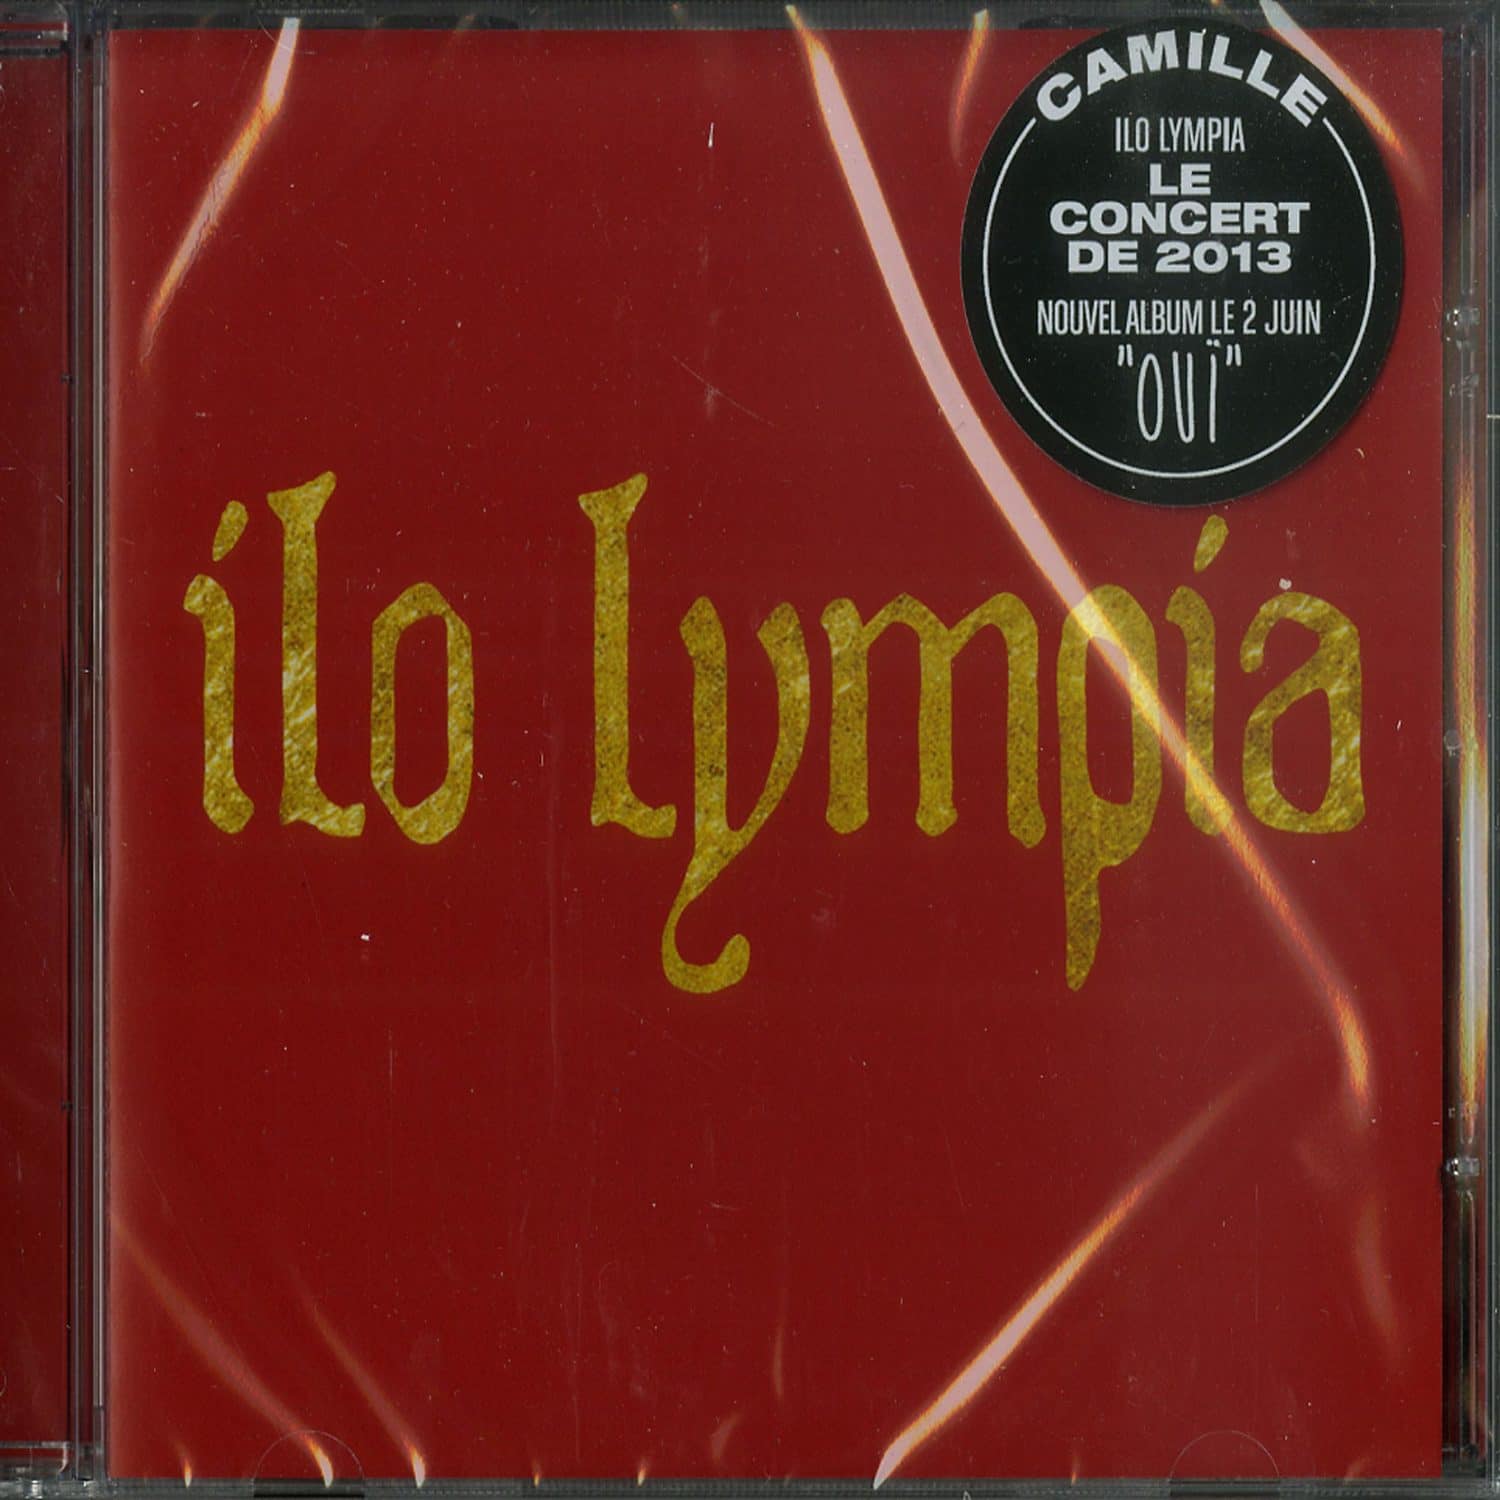 Camille - ILO LYMPIA 